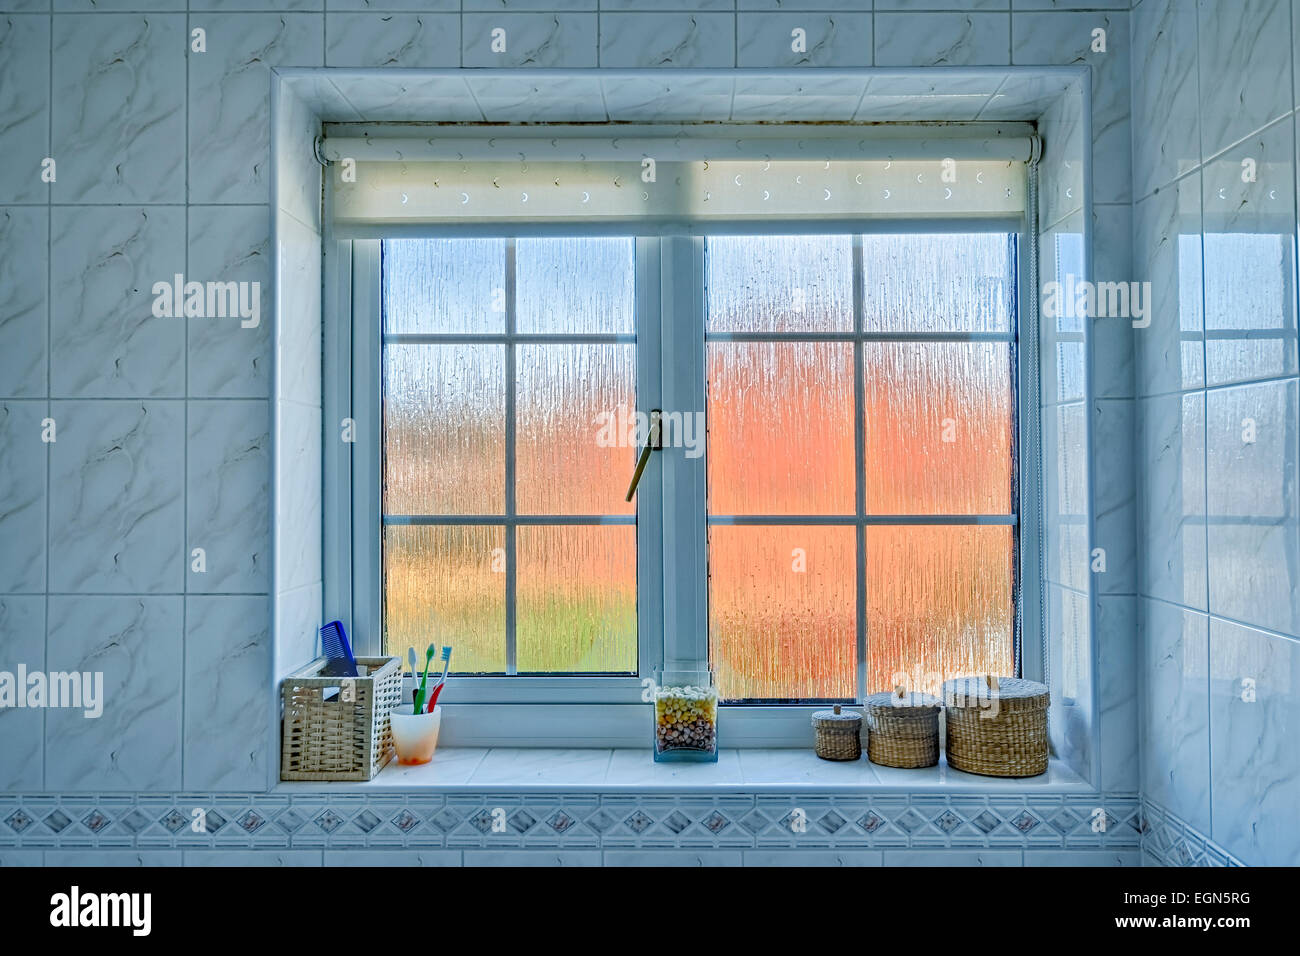 Cuarto de baño con ventana de vidrio esmerilado distorsionada exterior  naranja/azul y diversos artículos sobre el alféizar de la ventana  Fotografía de stock - Alamy